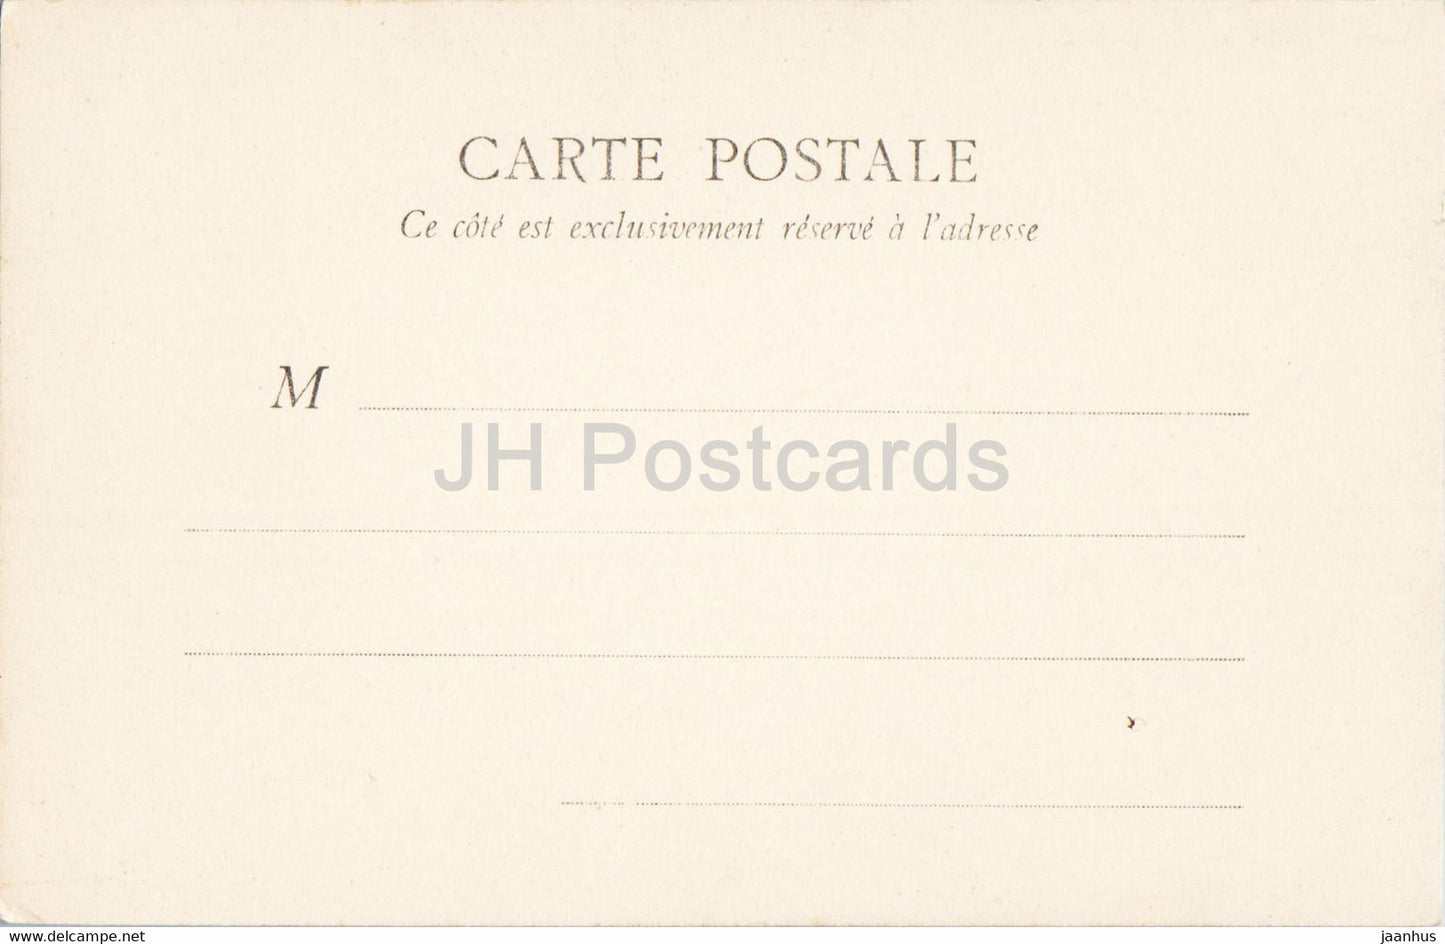 Fontainebleau - Chambre a coucher de Marie Antoinette - old postcard - France - unused